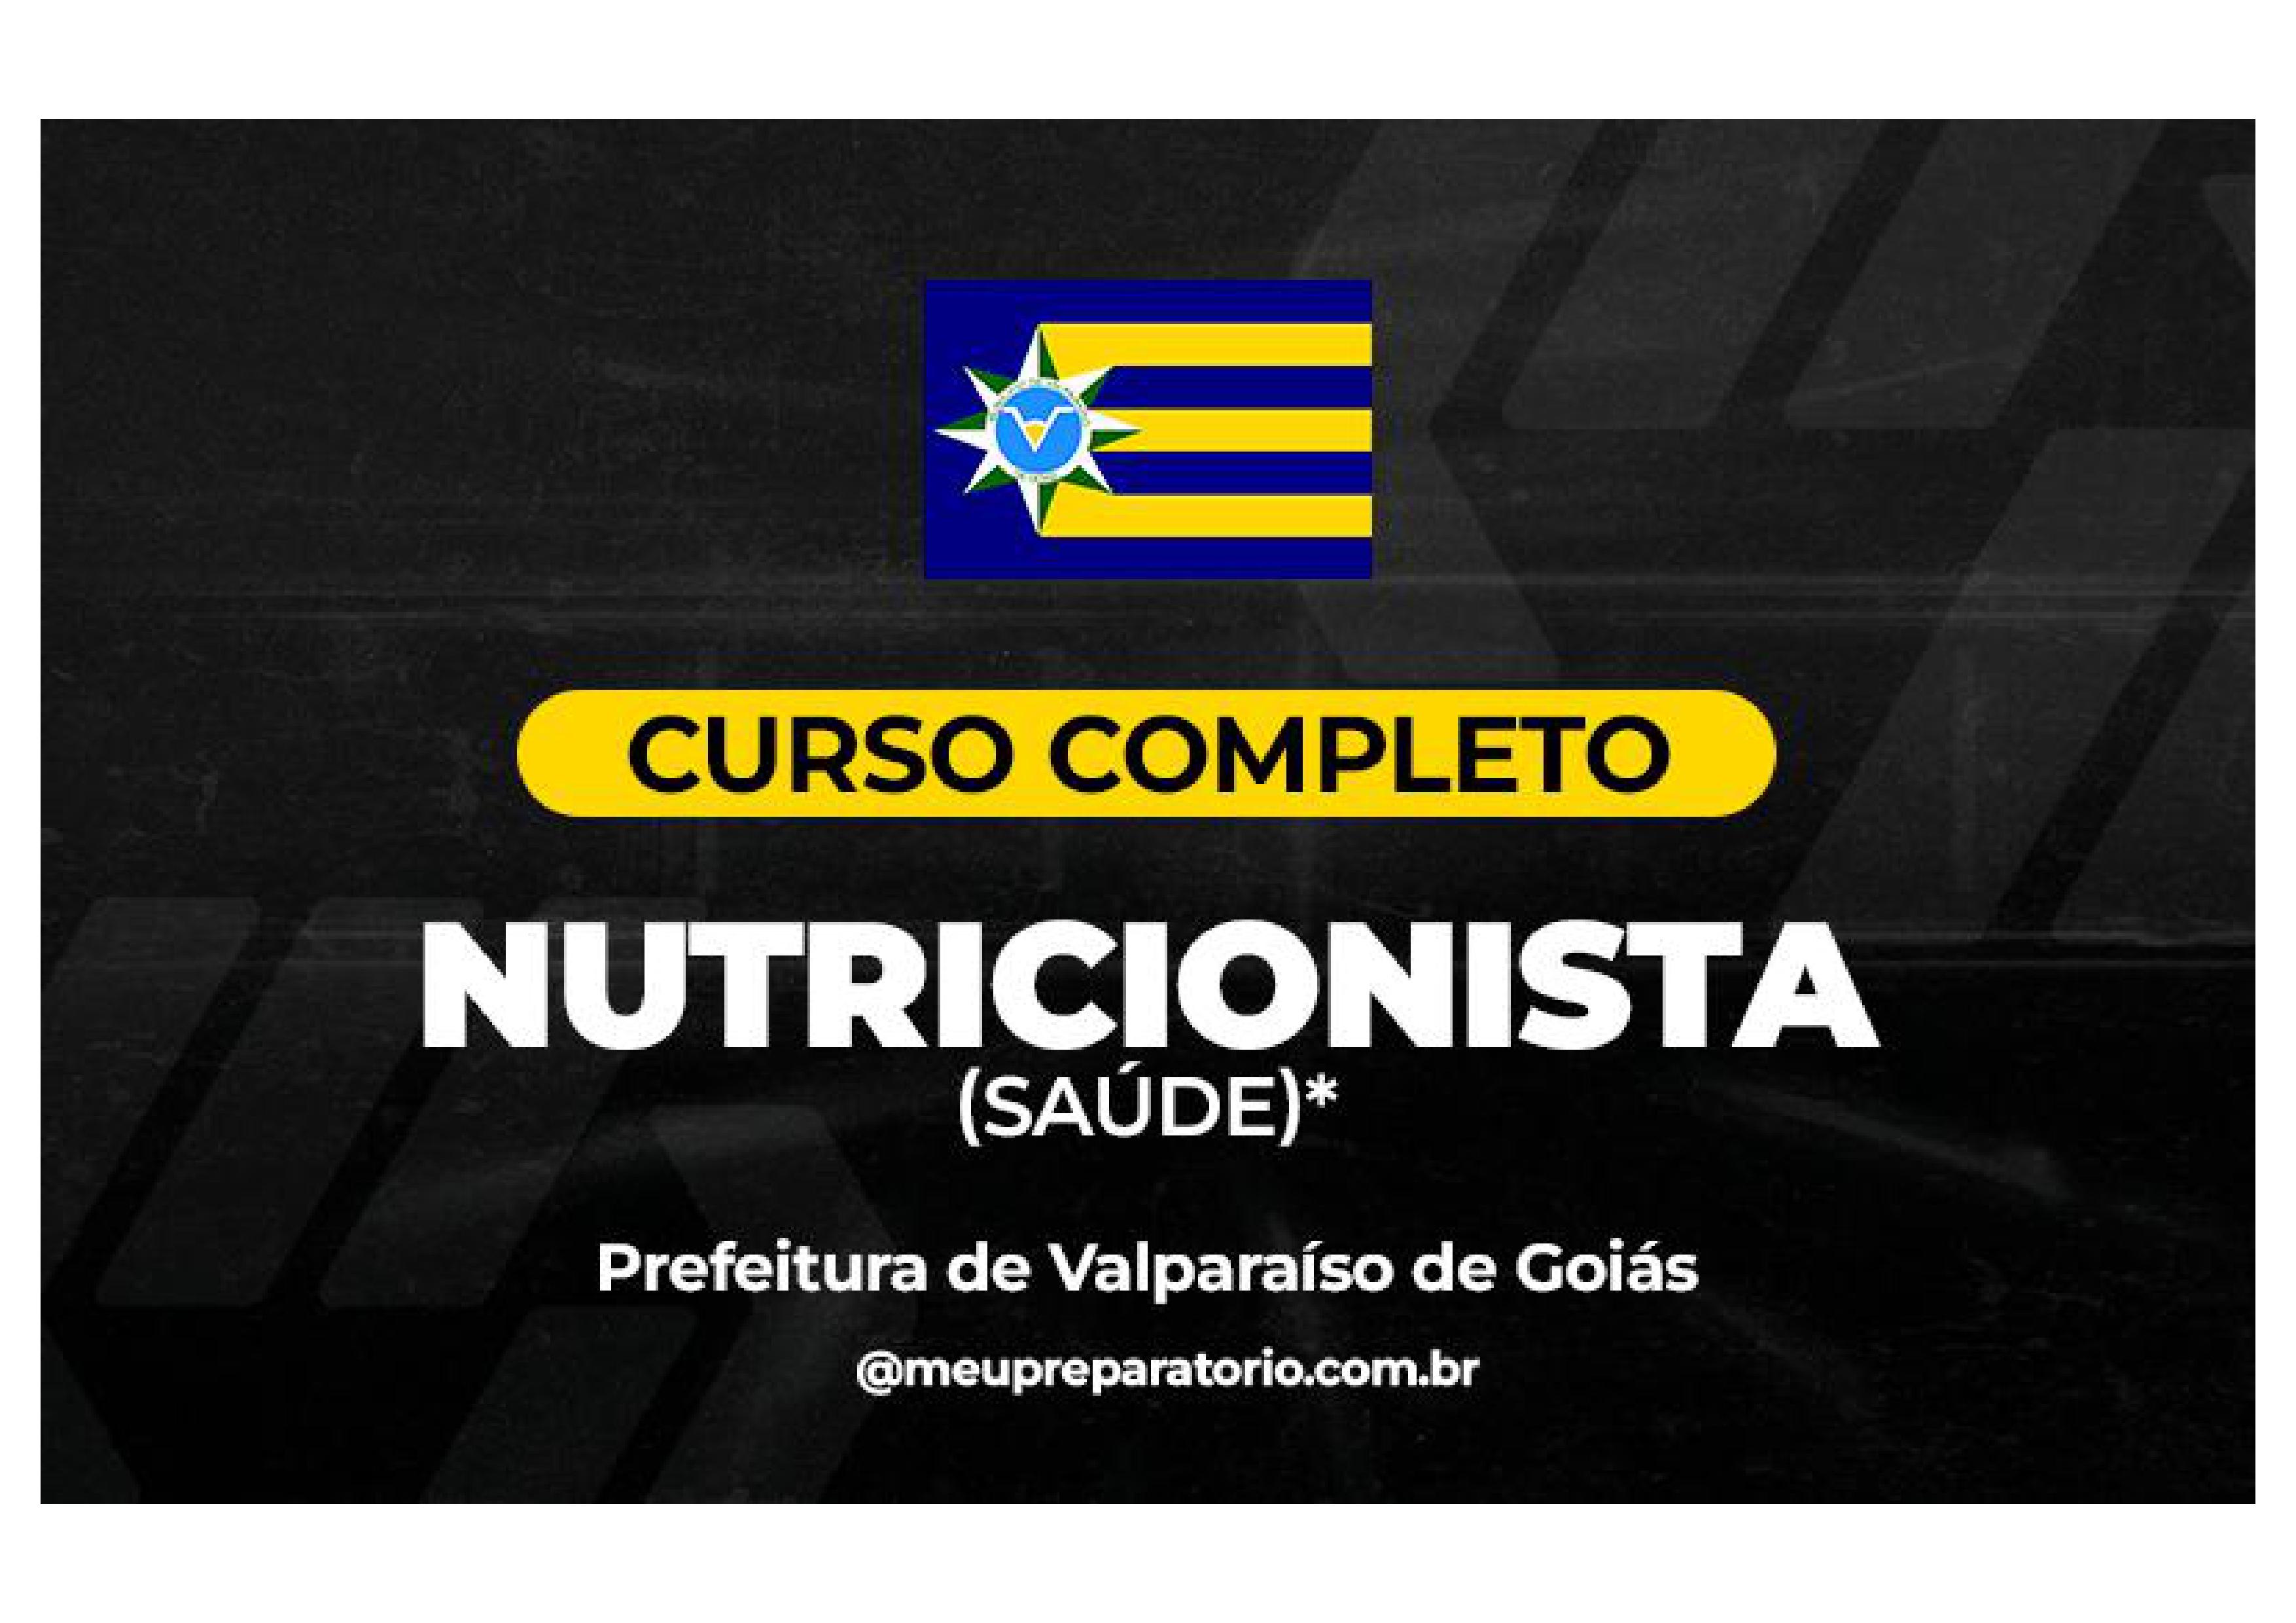 Nutricionista (Saúde) - Valparaíso (GO)